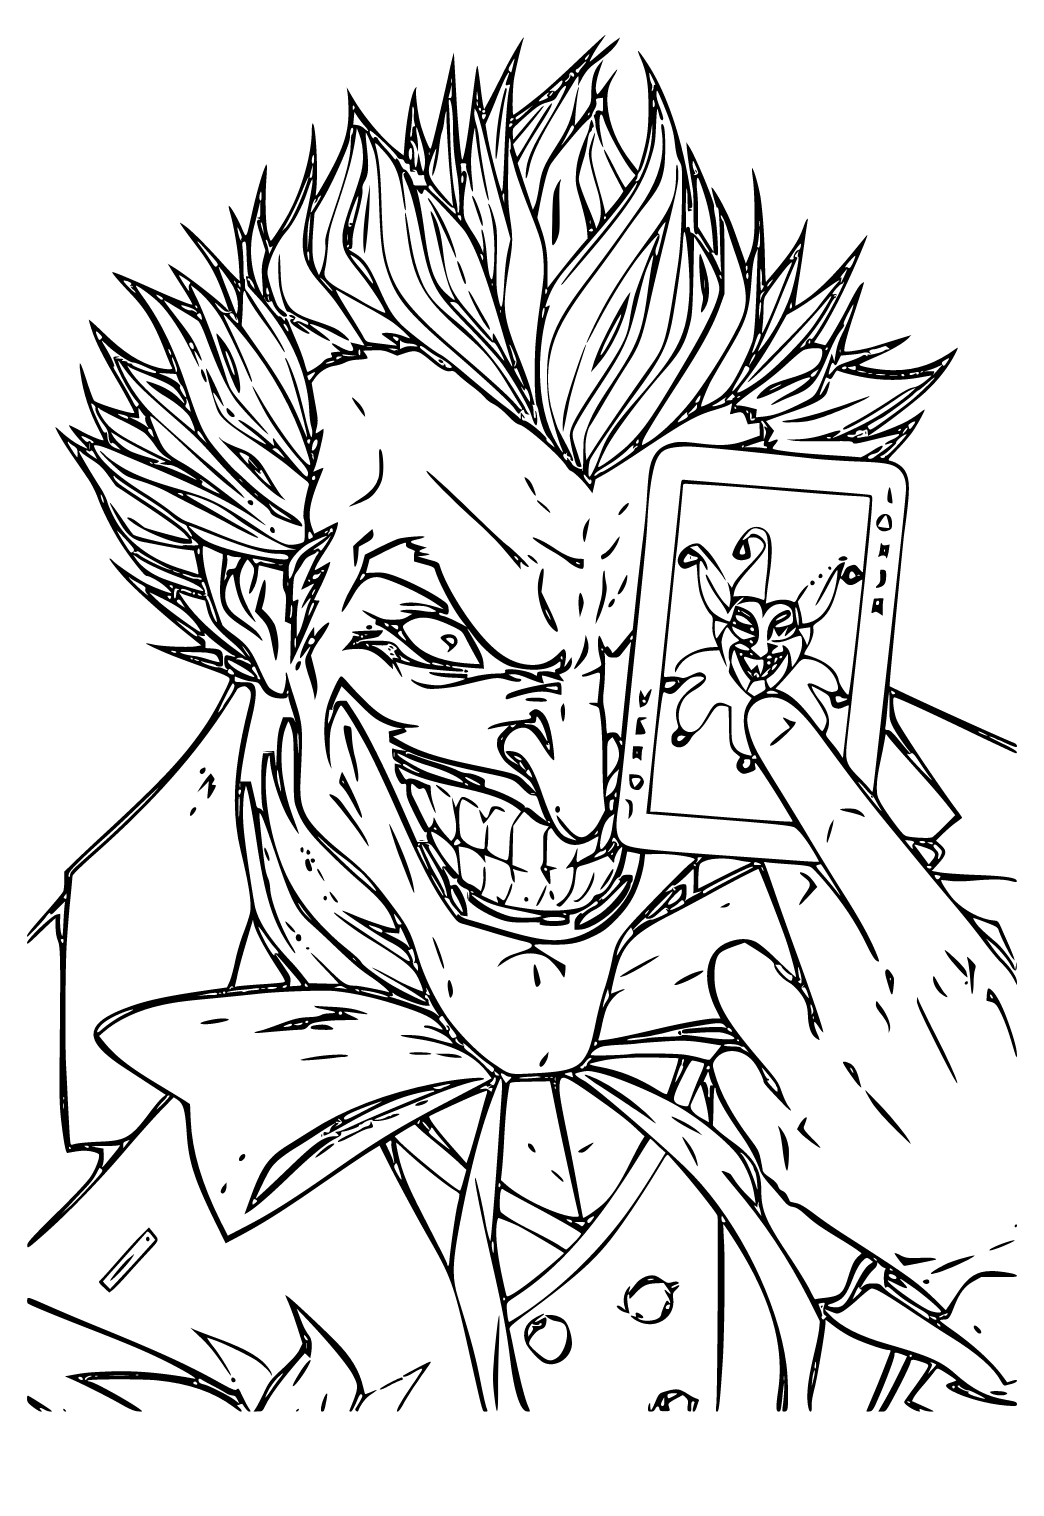 Jokeri